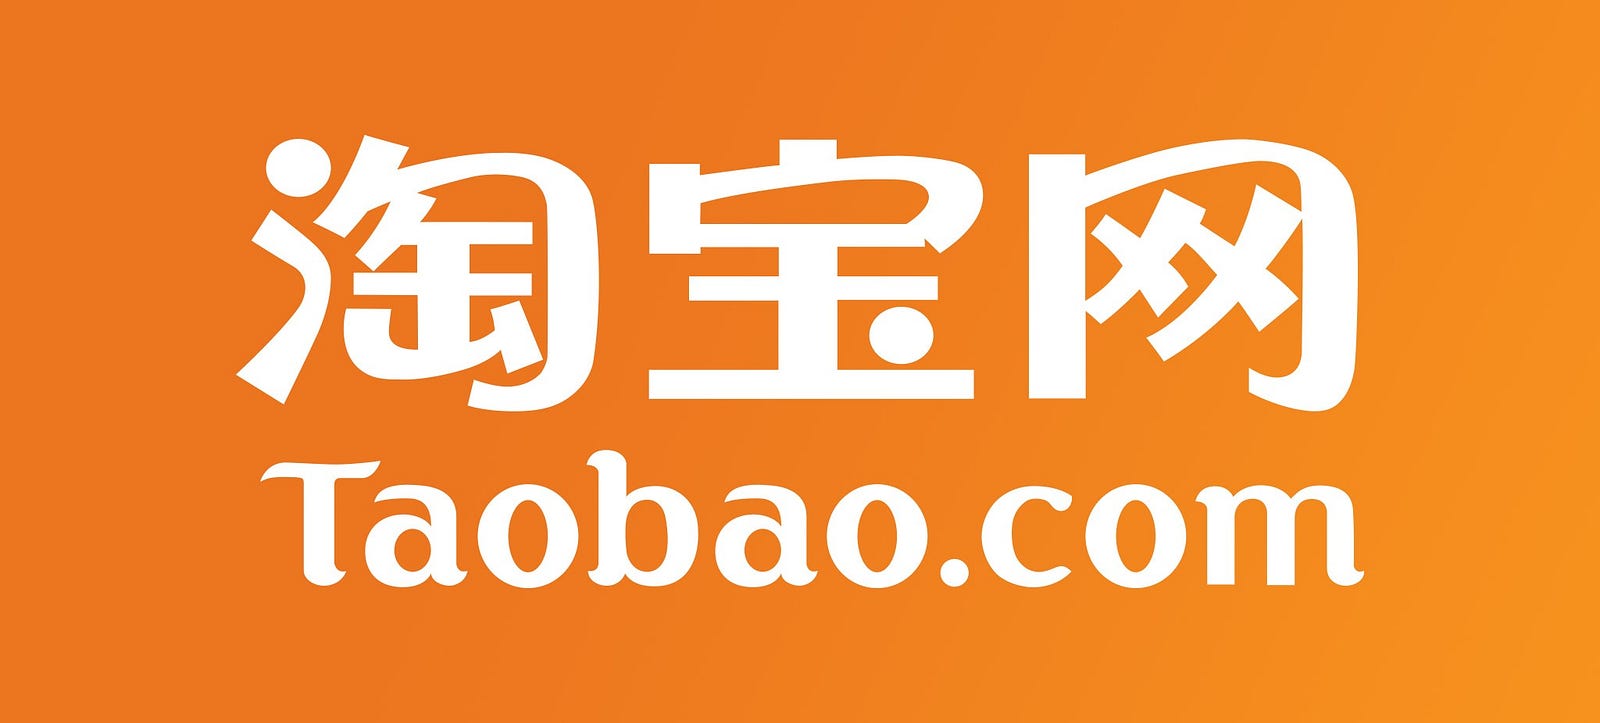 website thương mại điện tử taobao.com